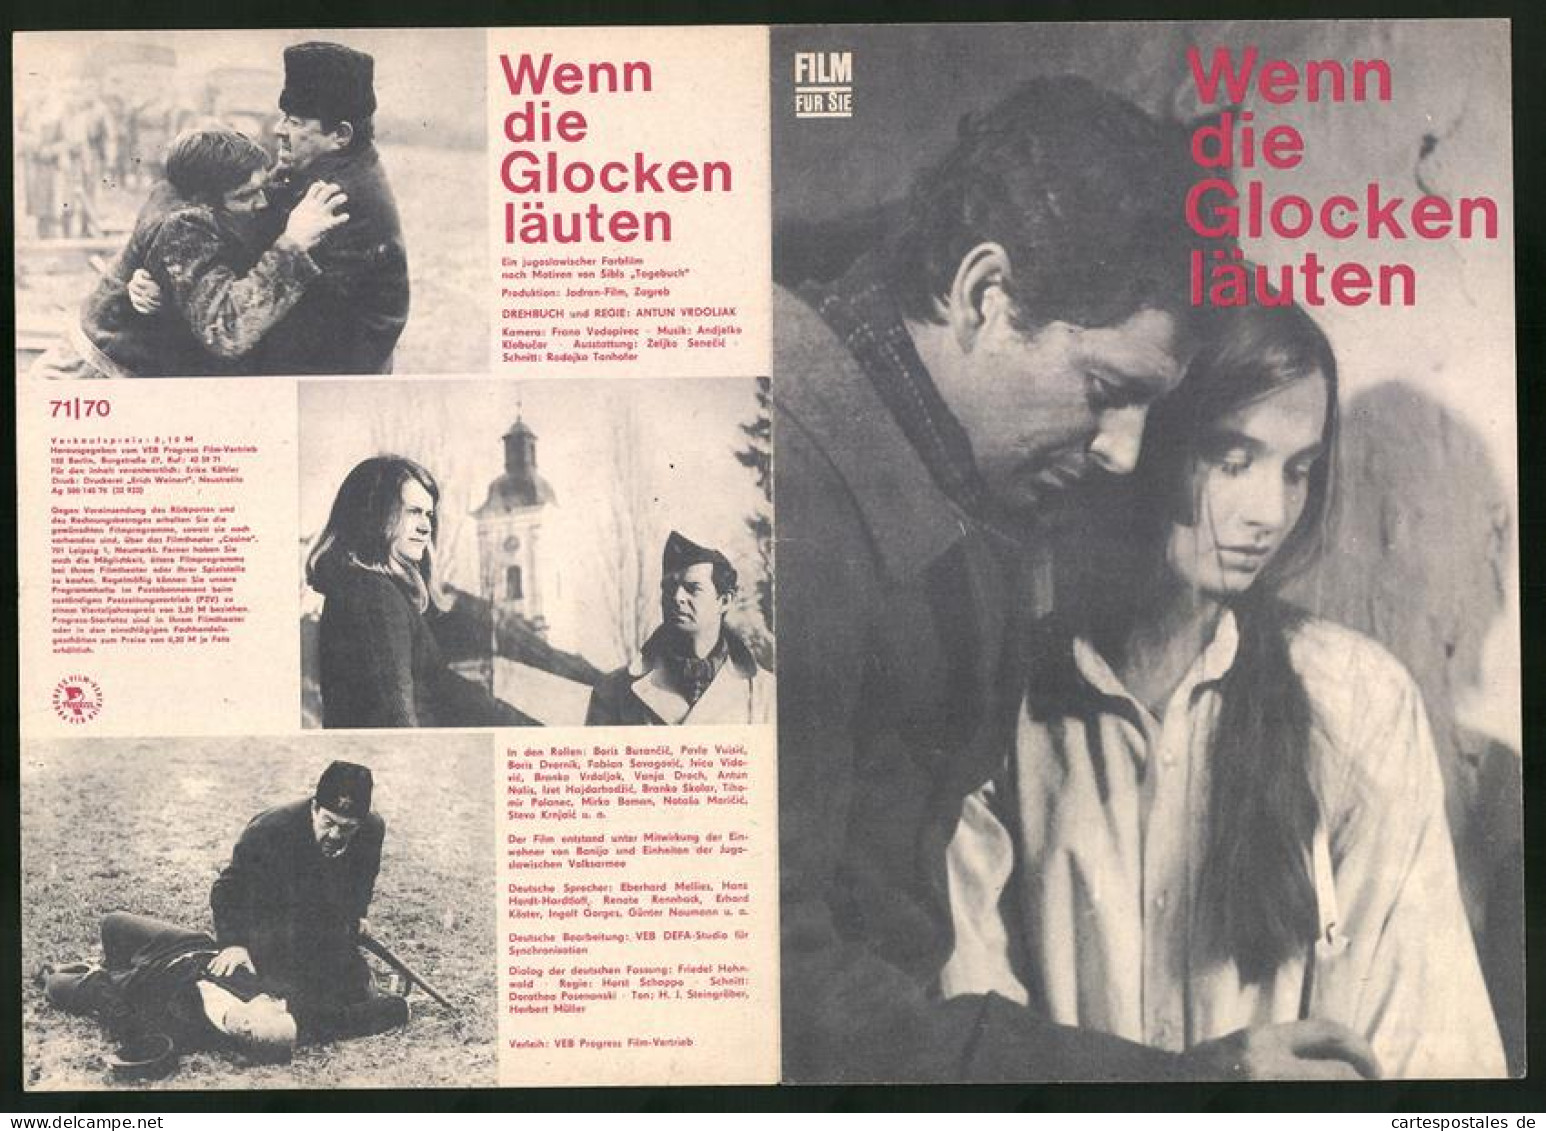 Filmprogramm Film Für Sie Nr. 71 /70, Wenn Die Glocken Läuten, Boris Buzancic, Pavle Vuisic, Regie: Antun Vrdoljak  - Zeitschriften